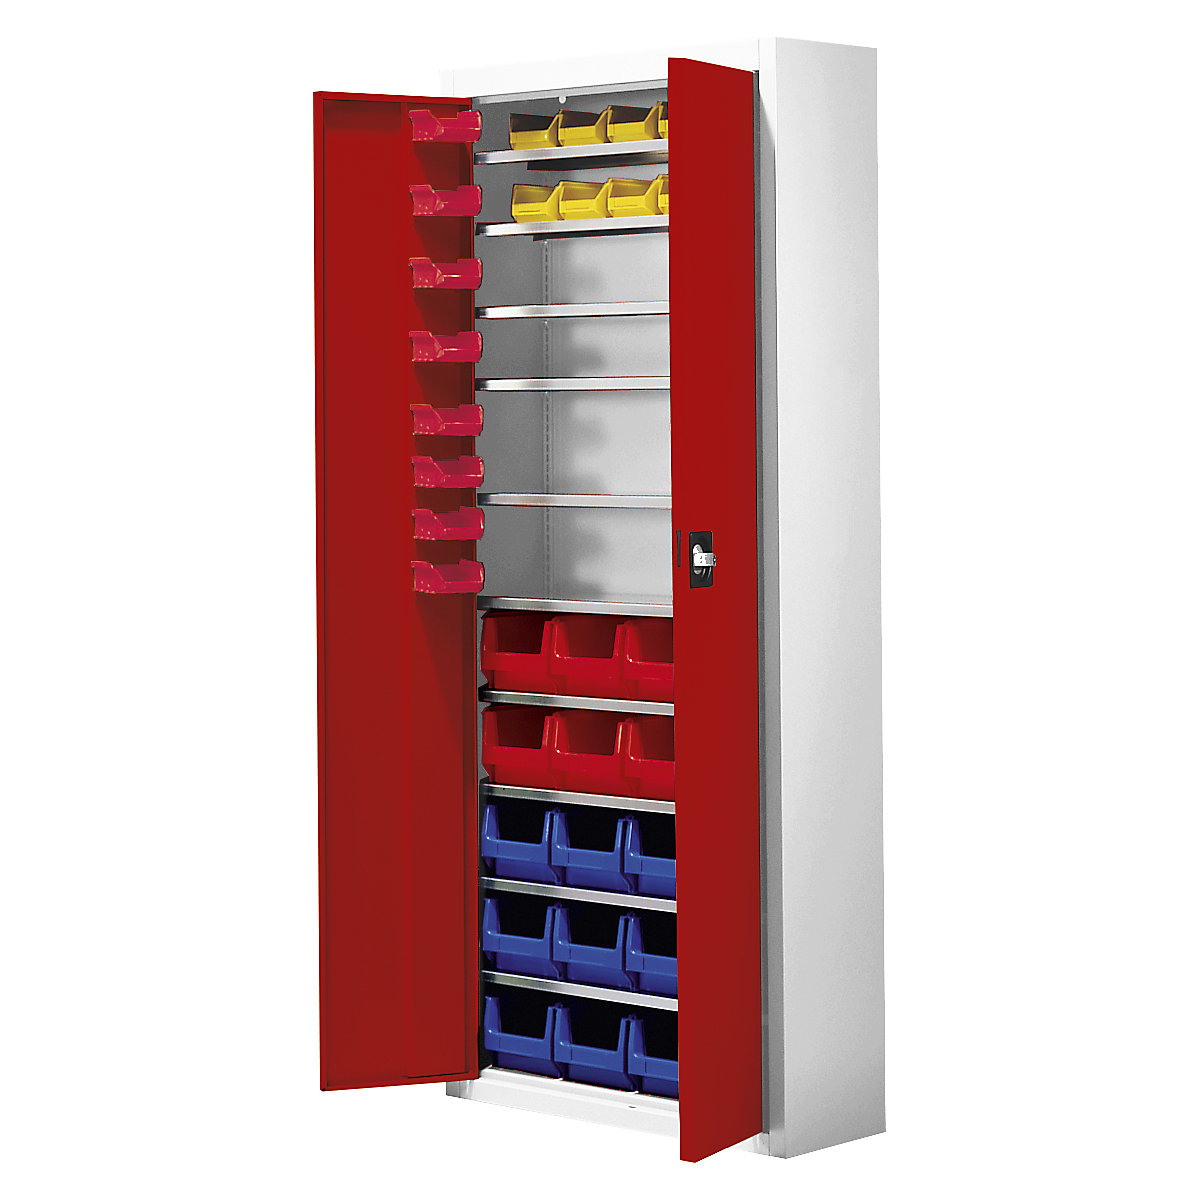 Skladiščna omara z odprtimi skladiščnimi posodami – mauser, VxŠxG 1740 x 680 x 280 mm, 48 posod, dve barvi, korpus siv, vrata rdeča, od 3 kosov-3